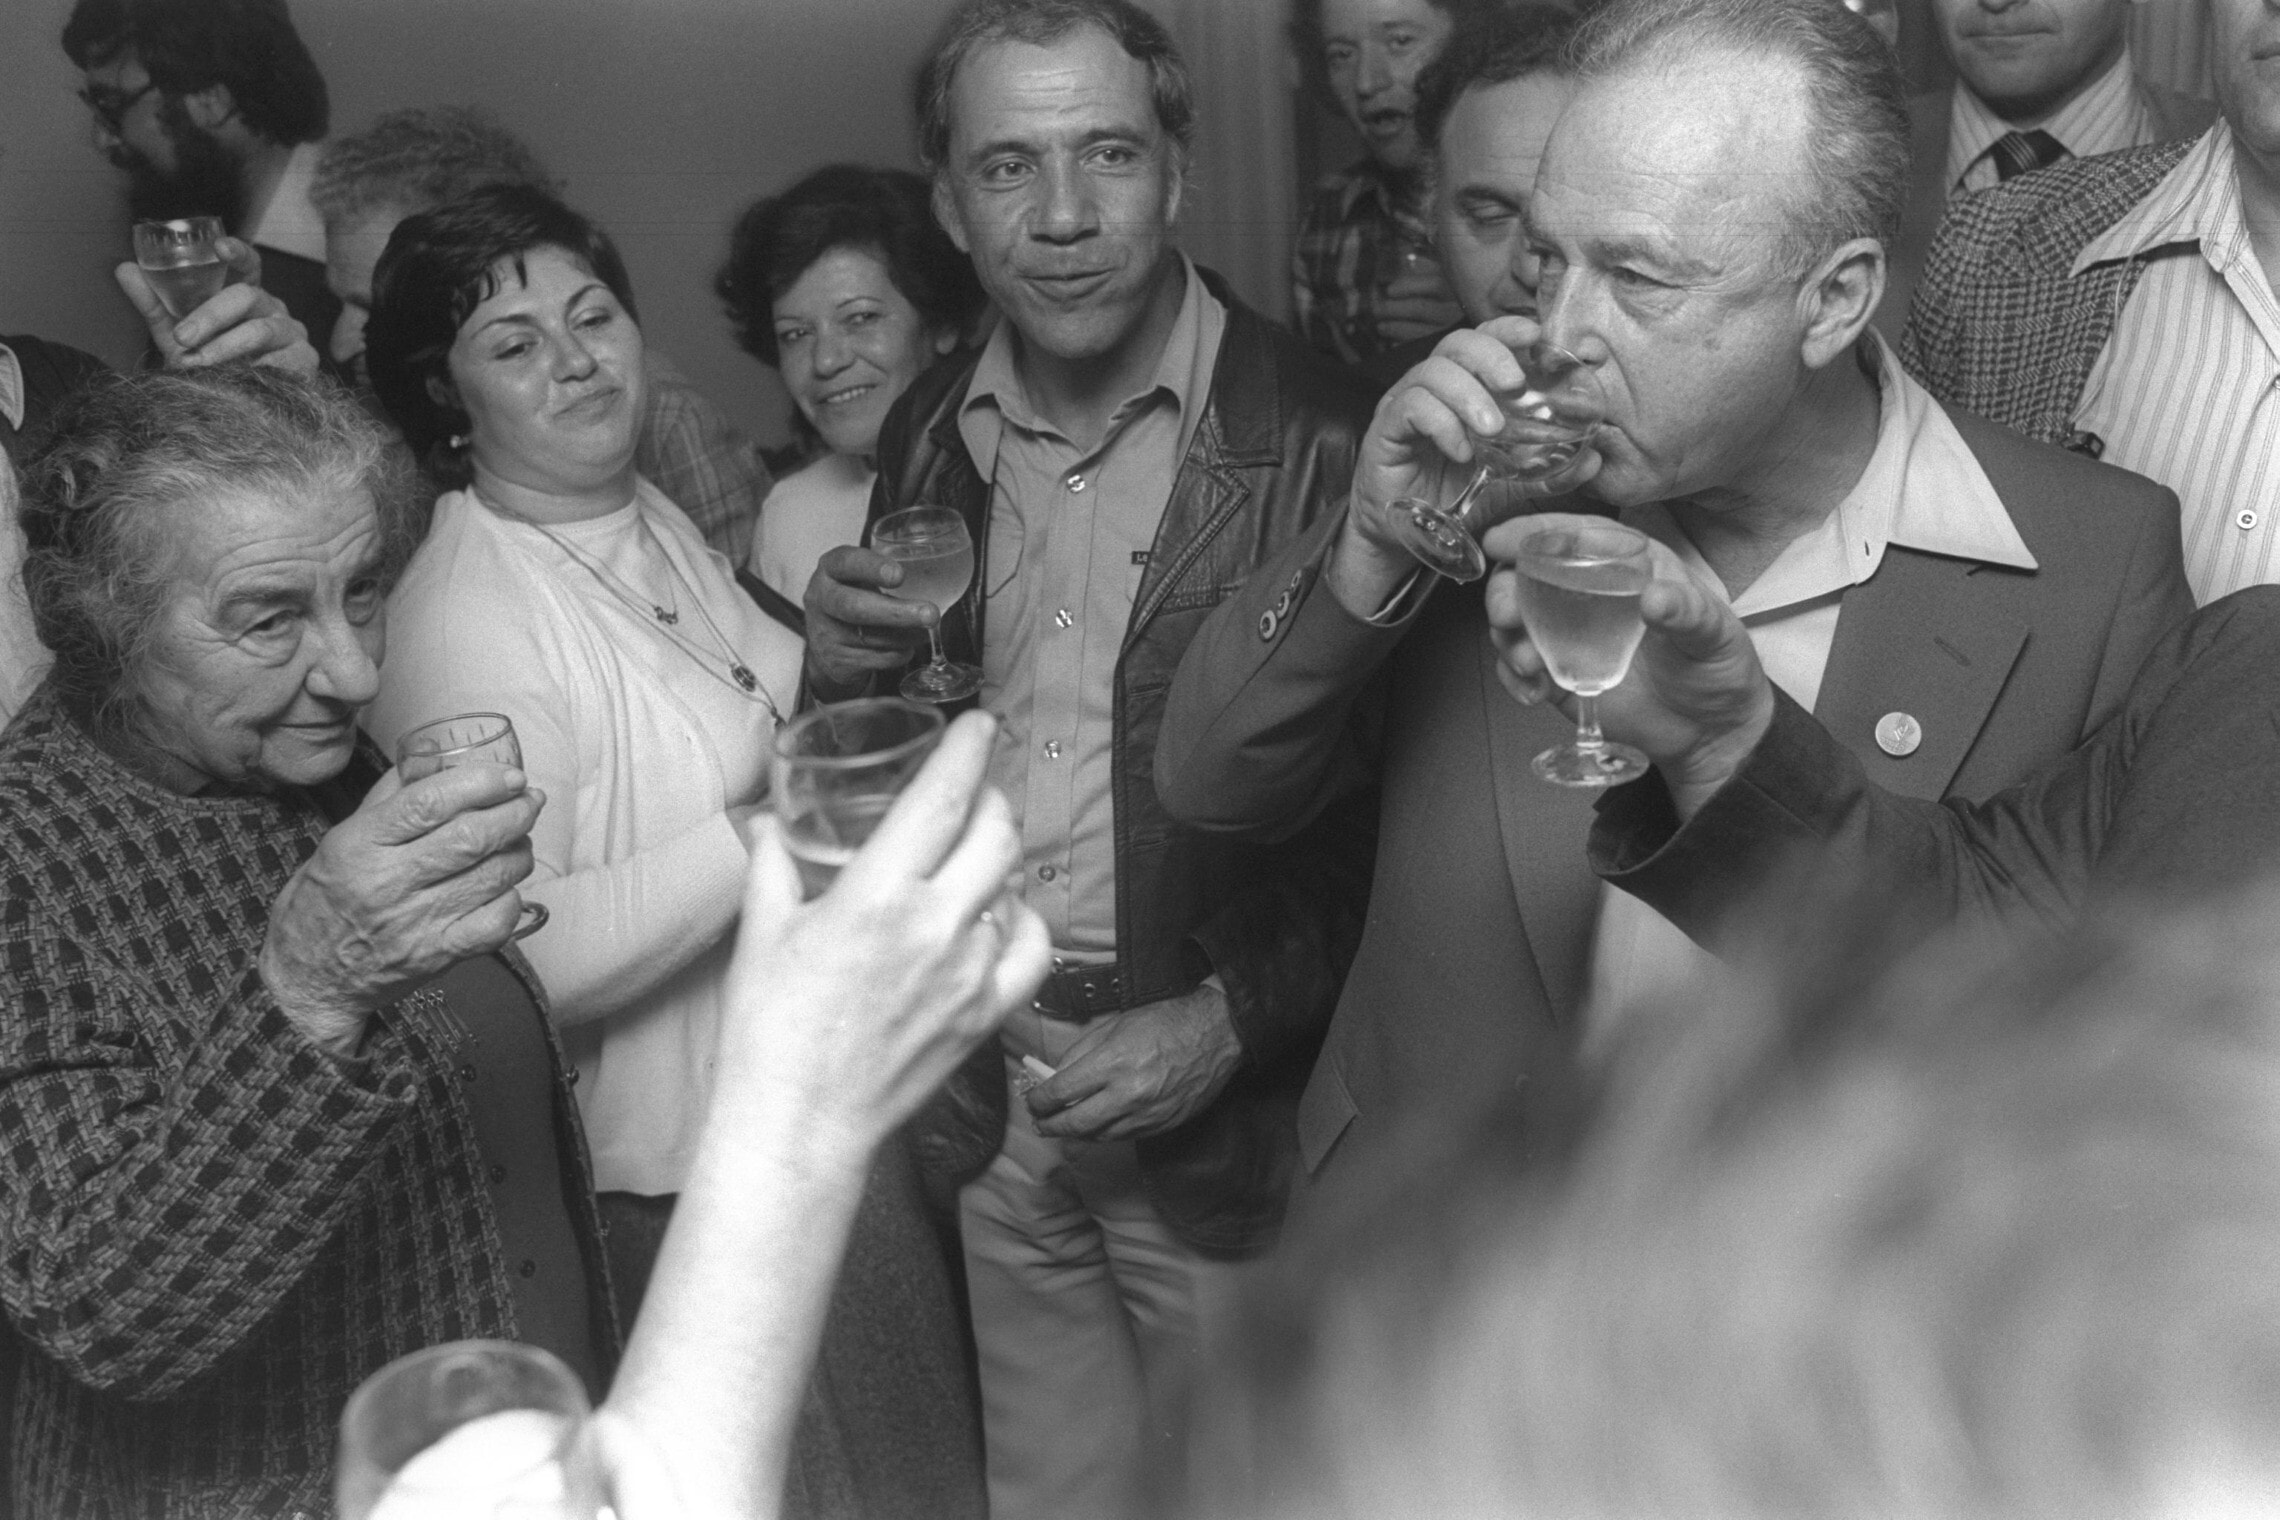 גולדה מאיר ויצחק רבין מרימים כוסית, 1977